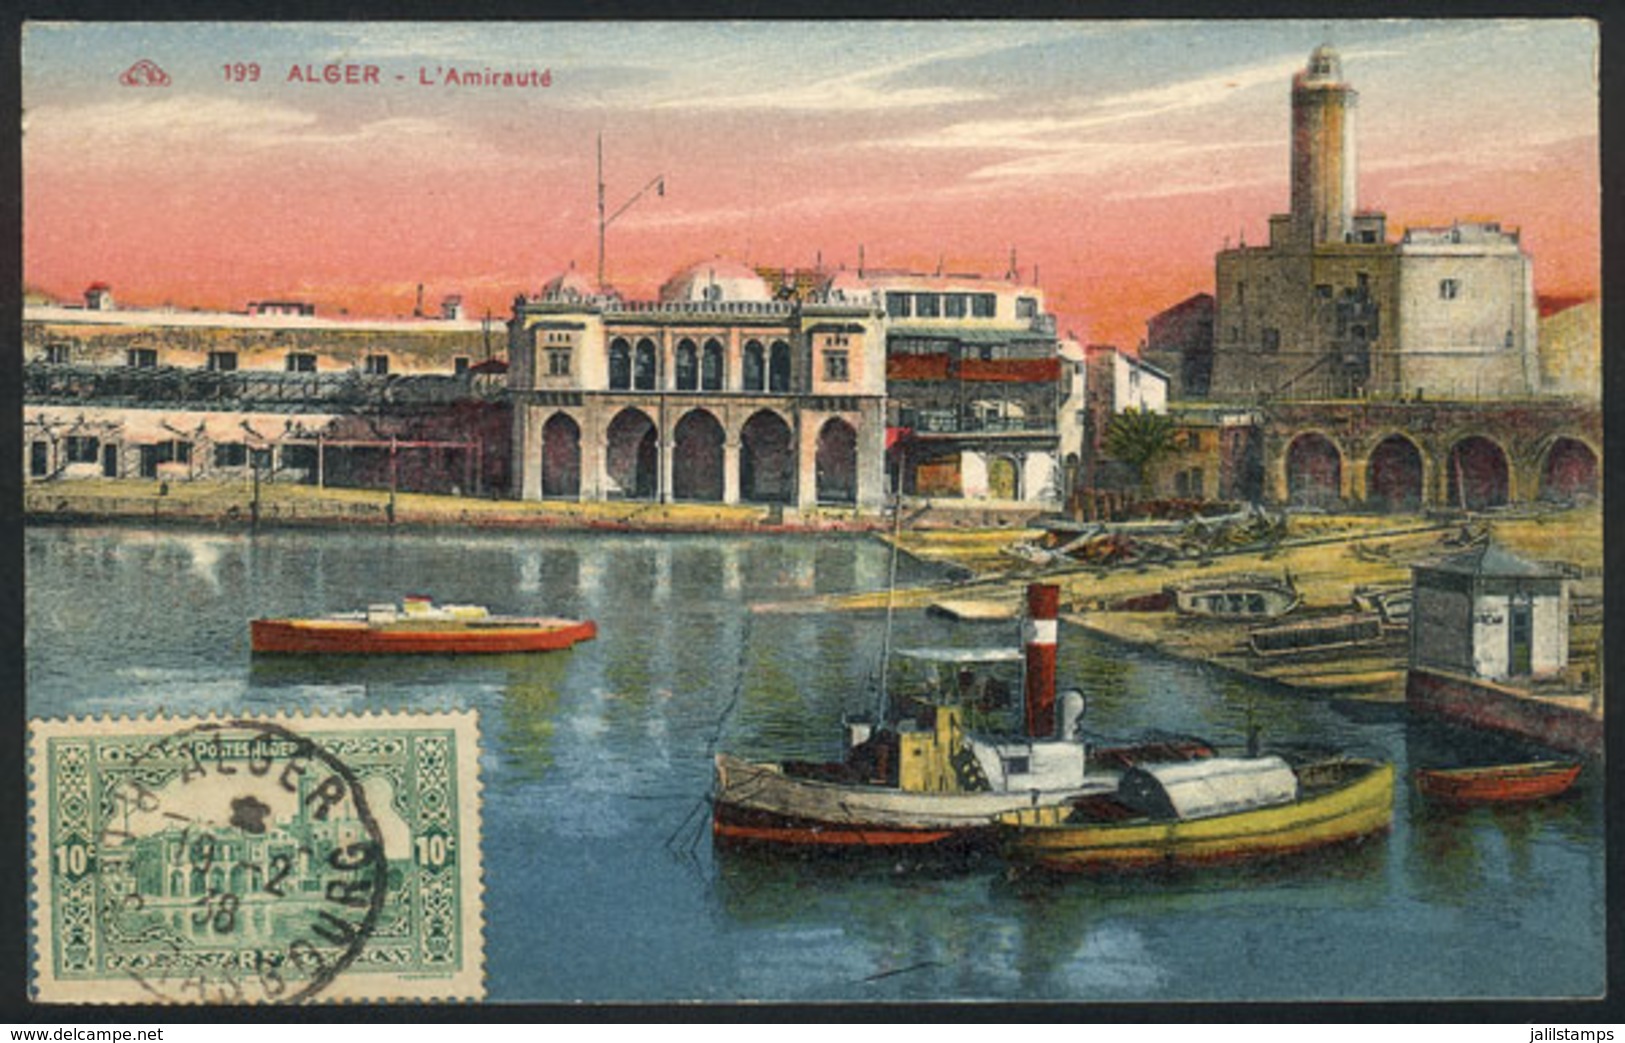 ALGERIA: ALGIERS: L'Amiraute, Architecture, Old Maximum Card, VF Quality - Cartes-maximum